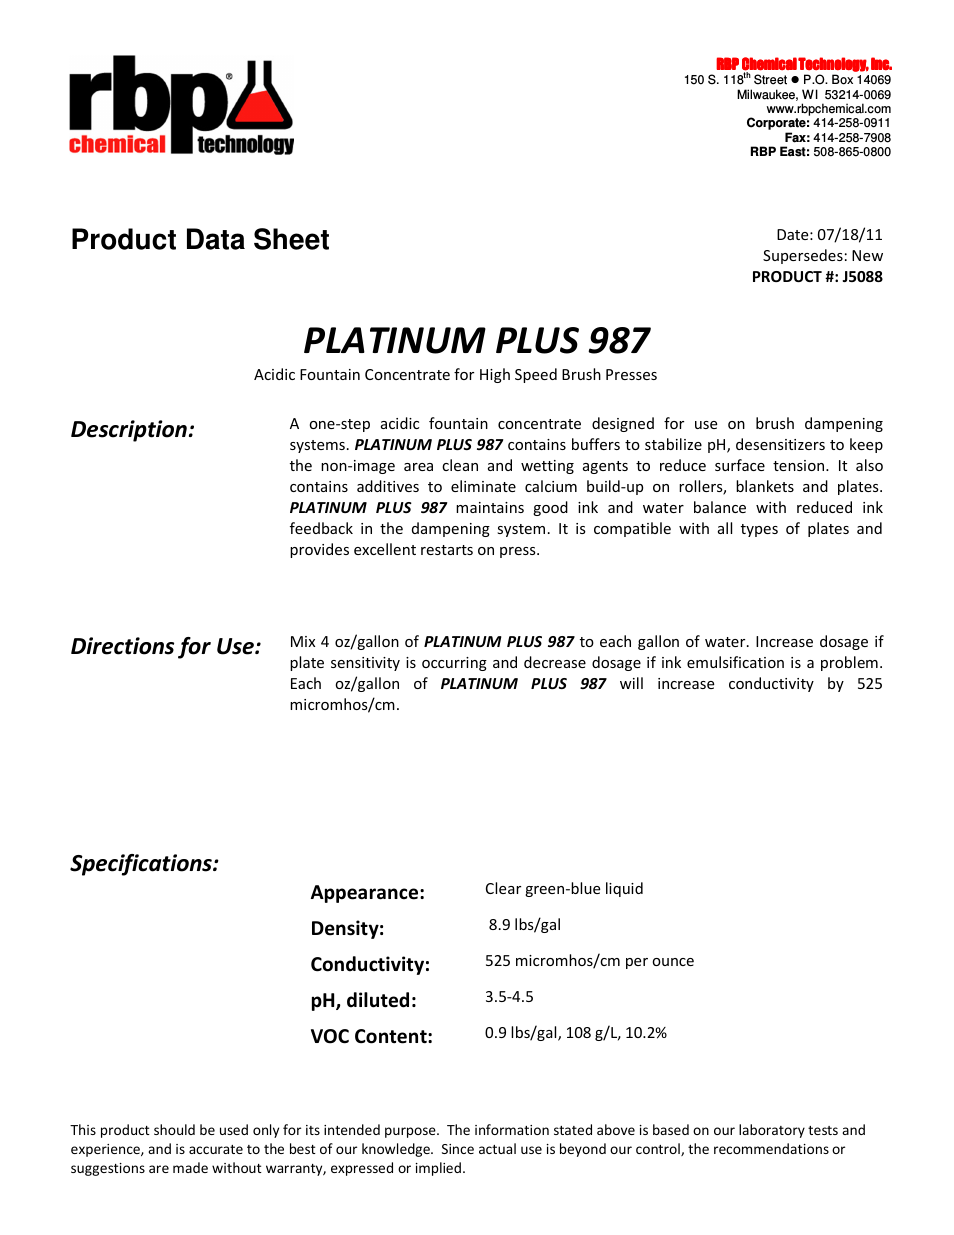 J5088 PLATINUM PLUS 987